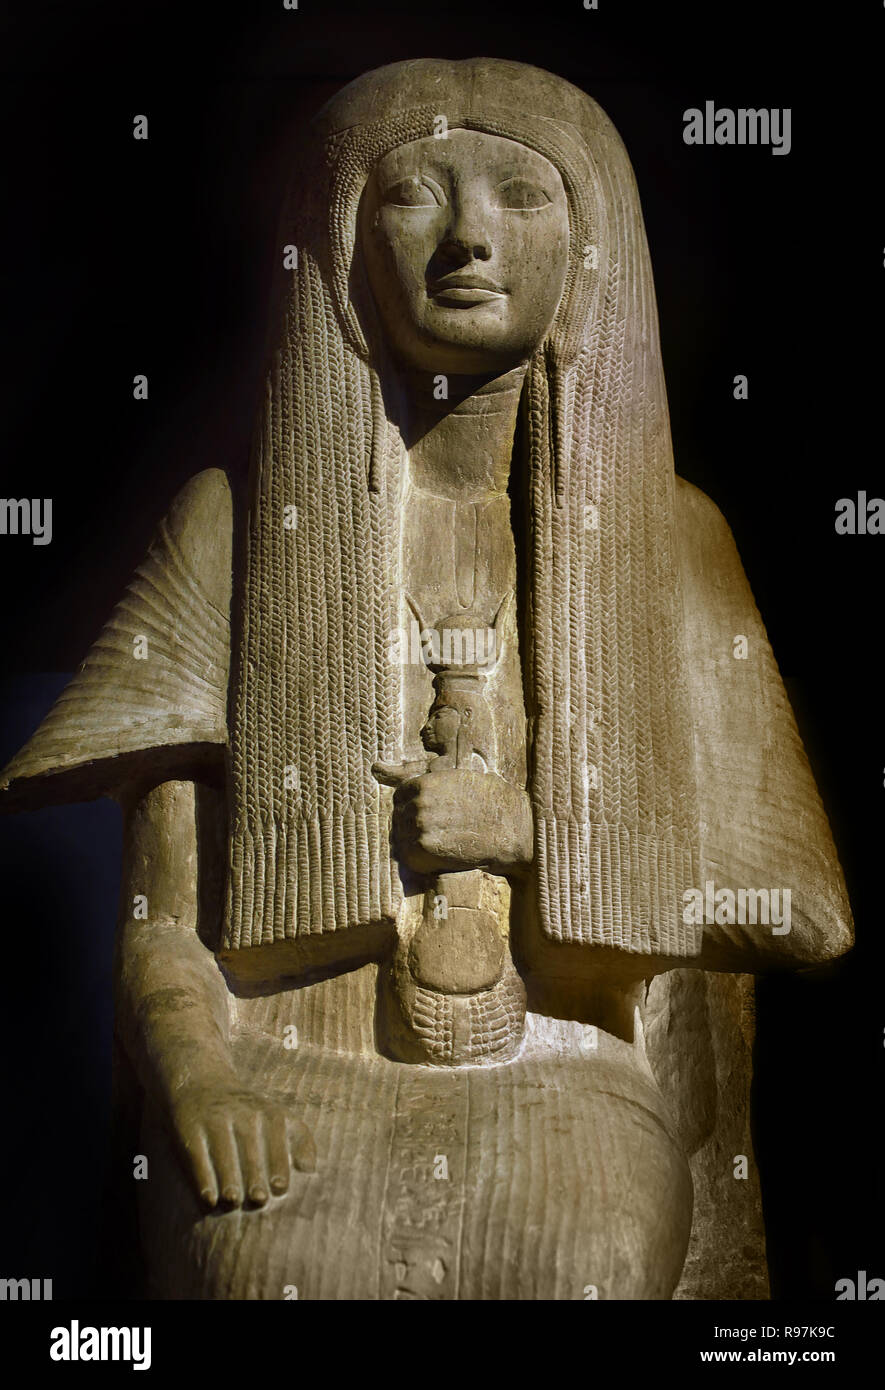 Siège de mérite : Nouvel Empire, 18e dynastie, 1319-1307 av. J.-C. L'Égypte, Horemheb égyptien. ( Mérite Ptah ('bien-aimé du dieu Ptah') a été l'un des médecin dans l'Egypte ancienne. Elle est connue pour être la première femme connue par son nom dans l'histoire de la médecine, et peut-être la première femme nommée dans toutes les sciences ainsi ) Banque D'Images